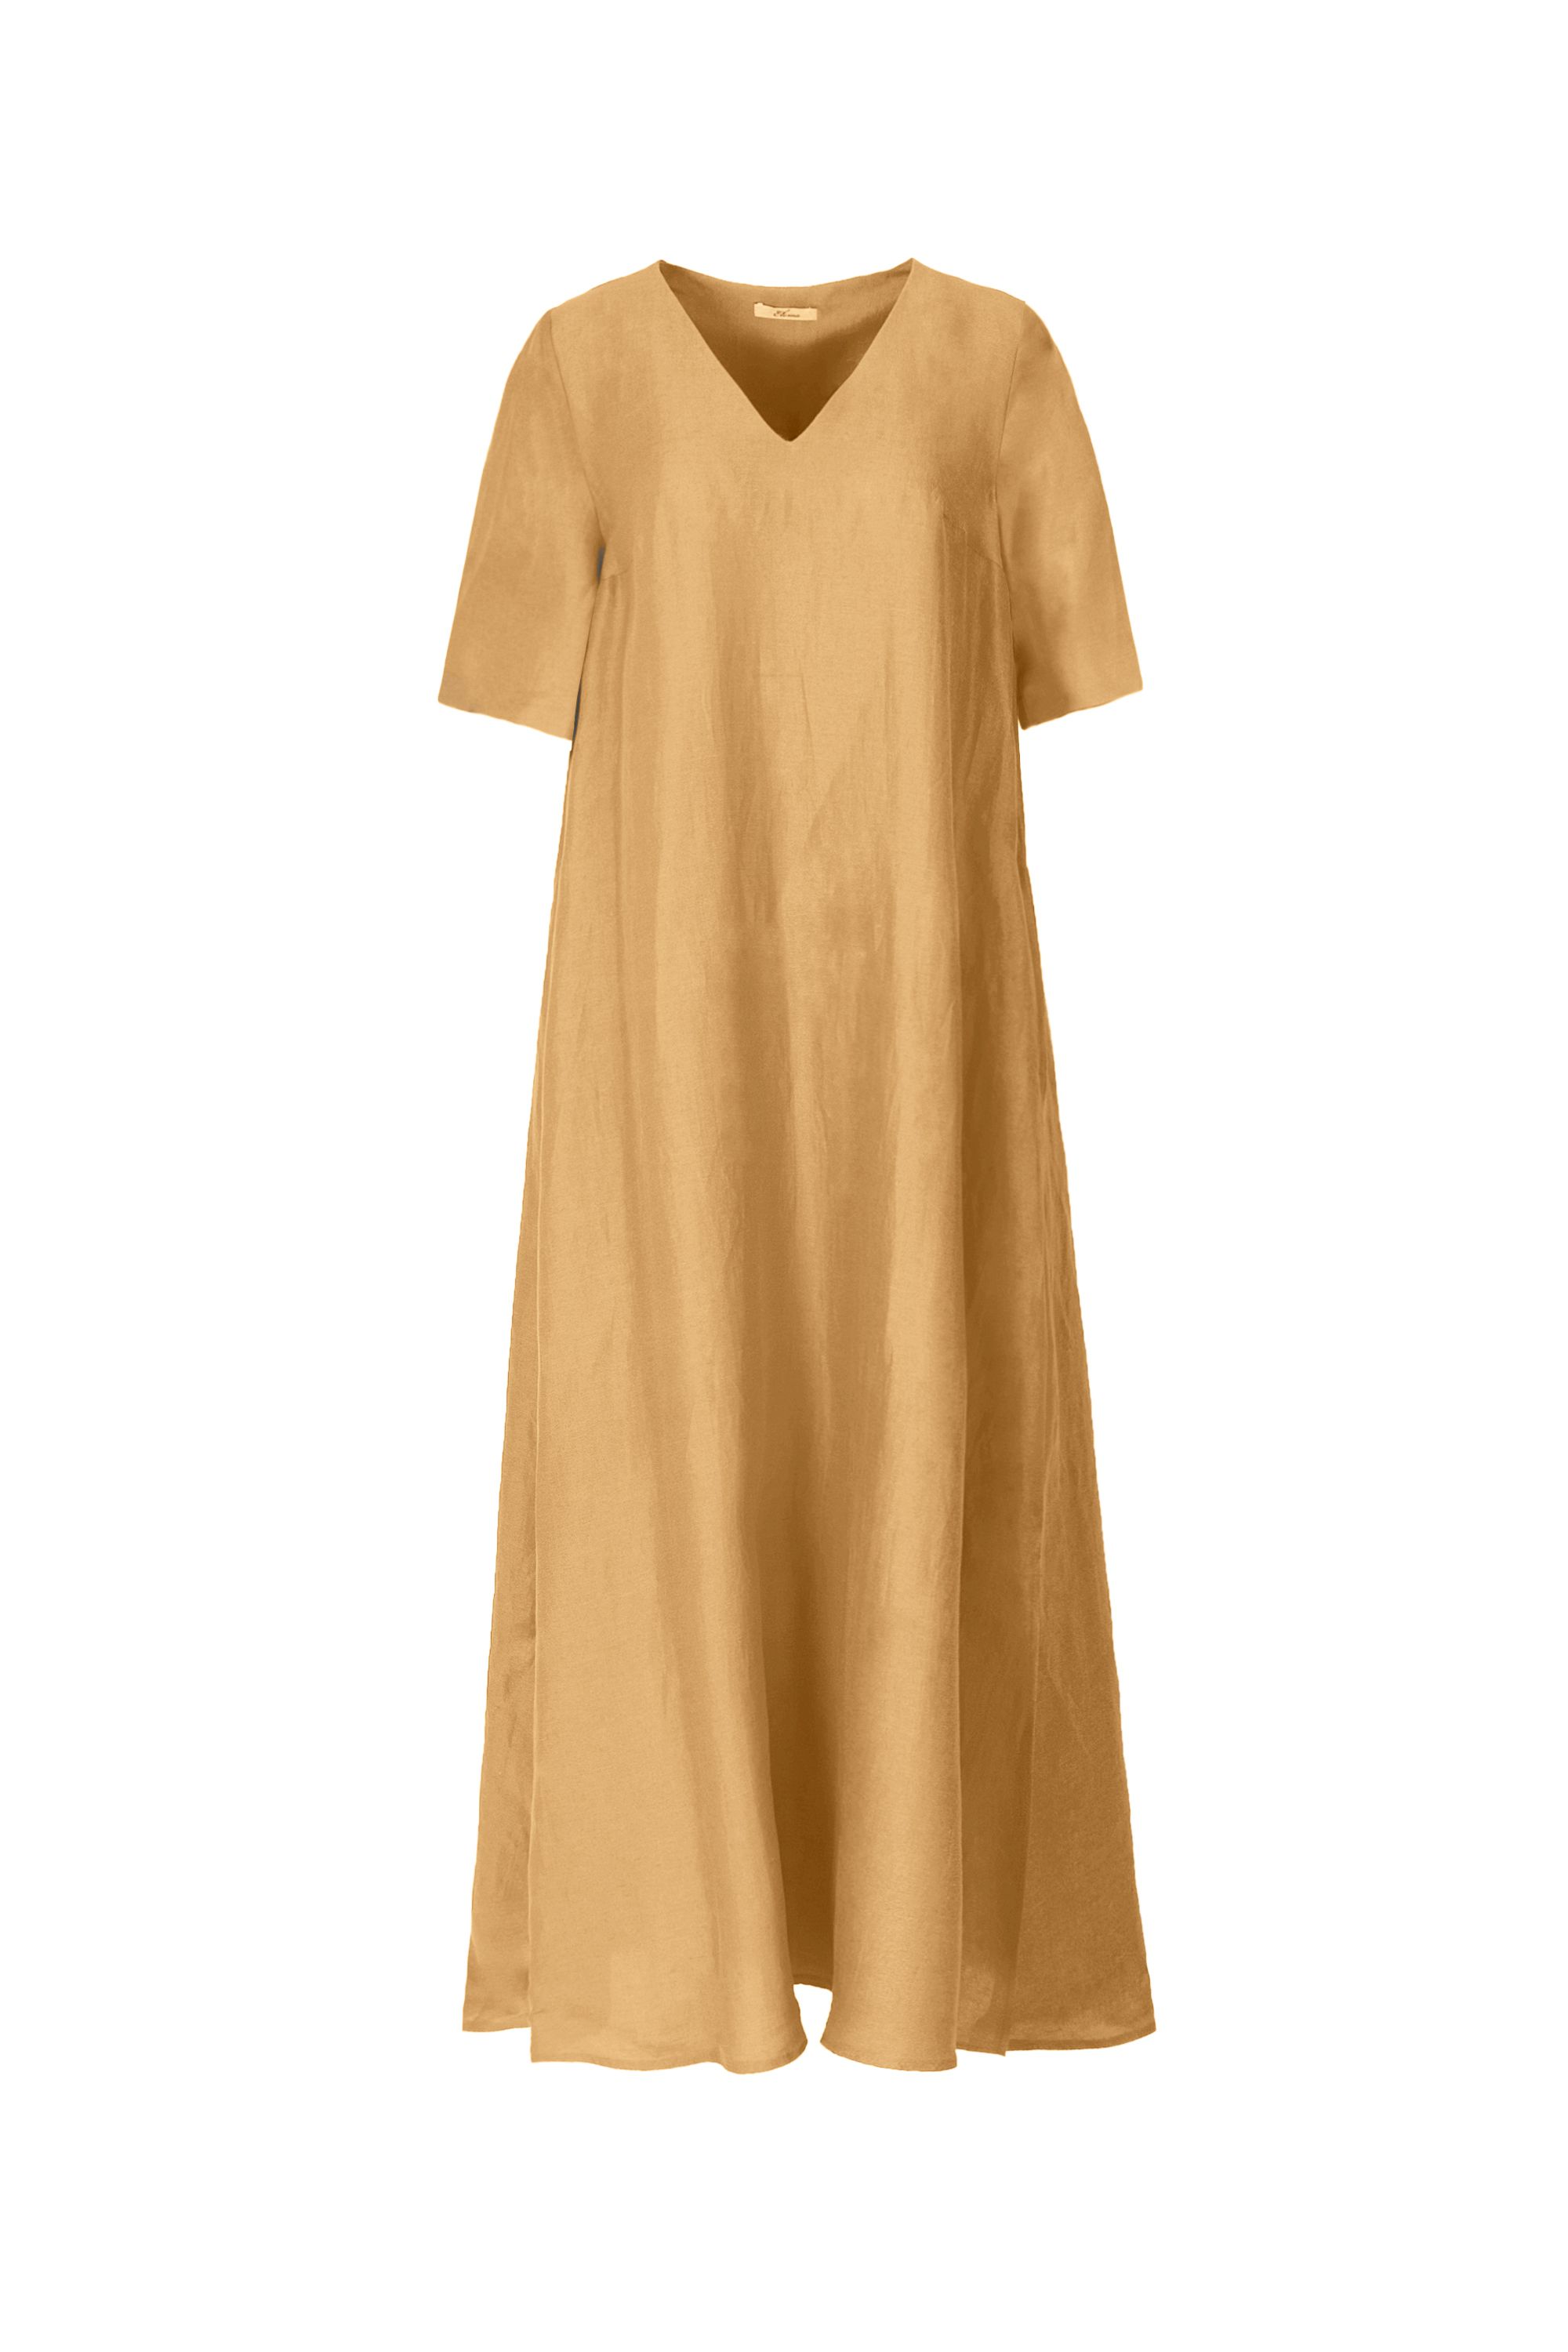 Платье женское 5К-13086-1. Фото 1.